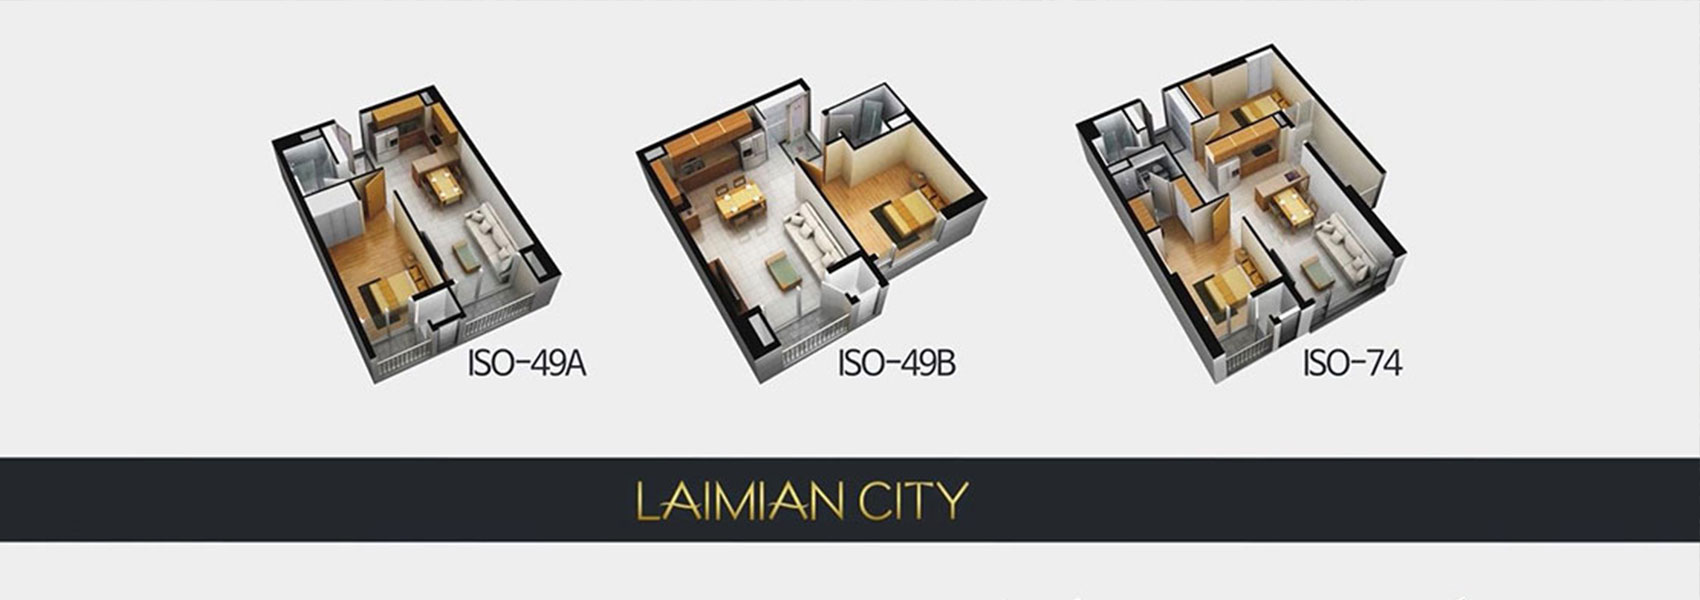 Thiết kế căn hộ Laimian City quận 2